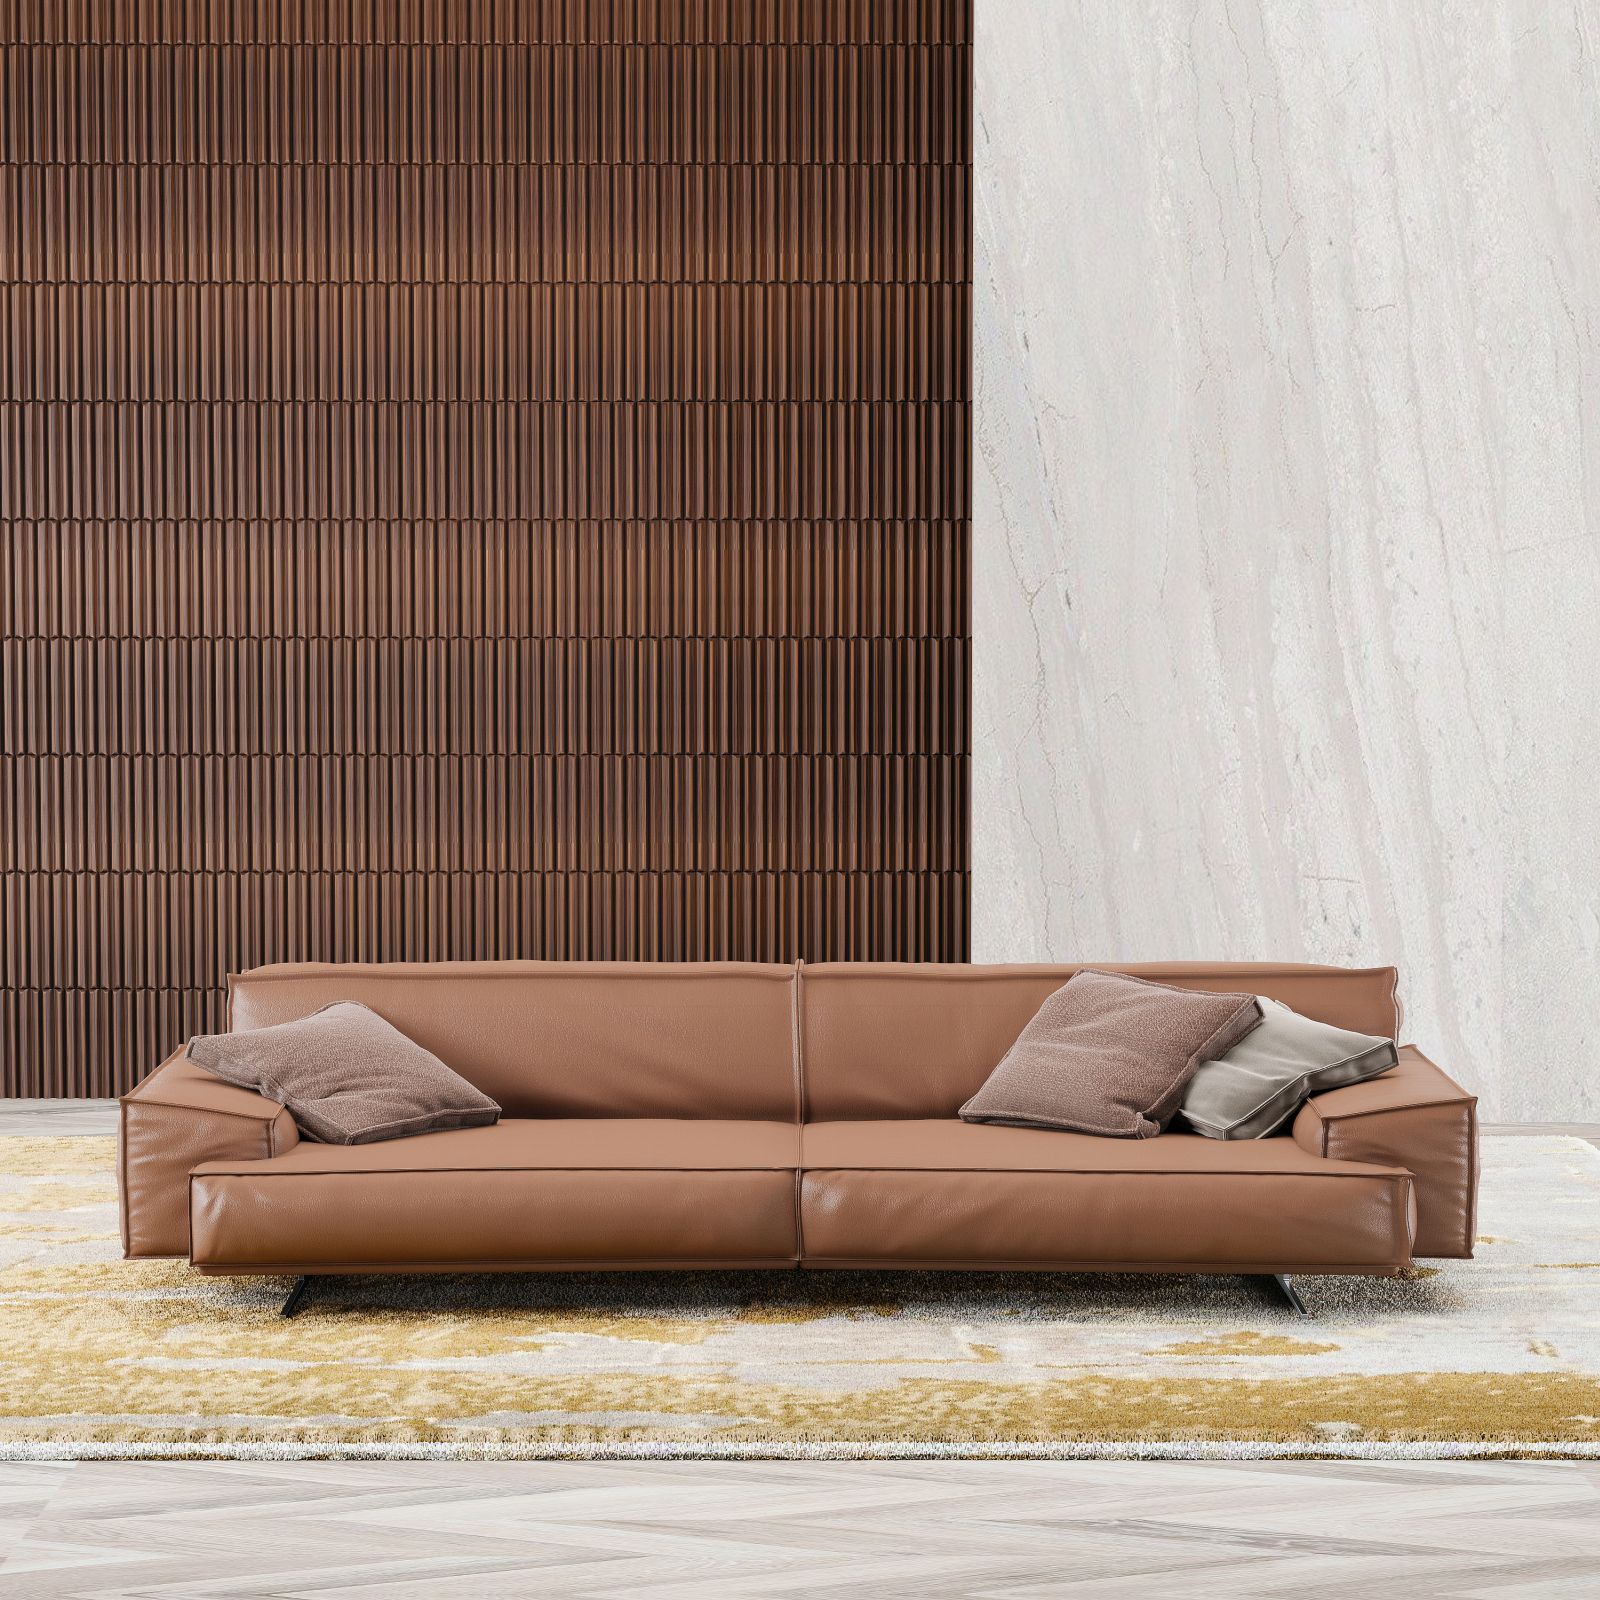 Sofa modulowa MAXXO lewitujaca bryla architektoniczna 3